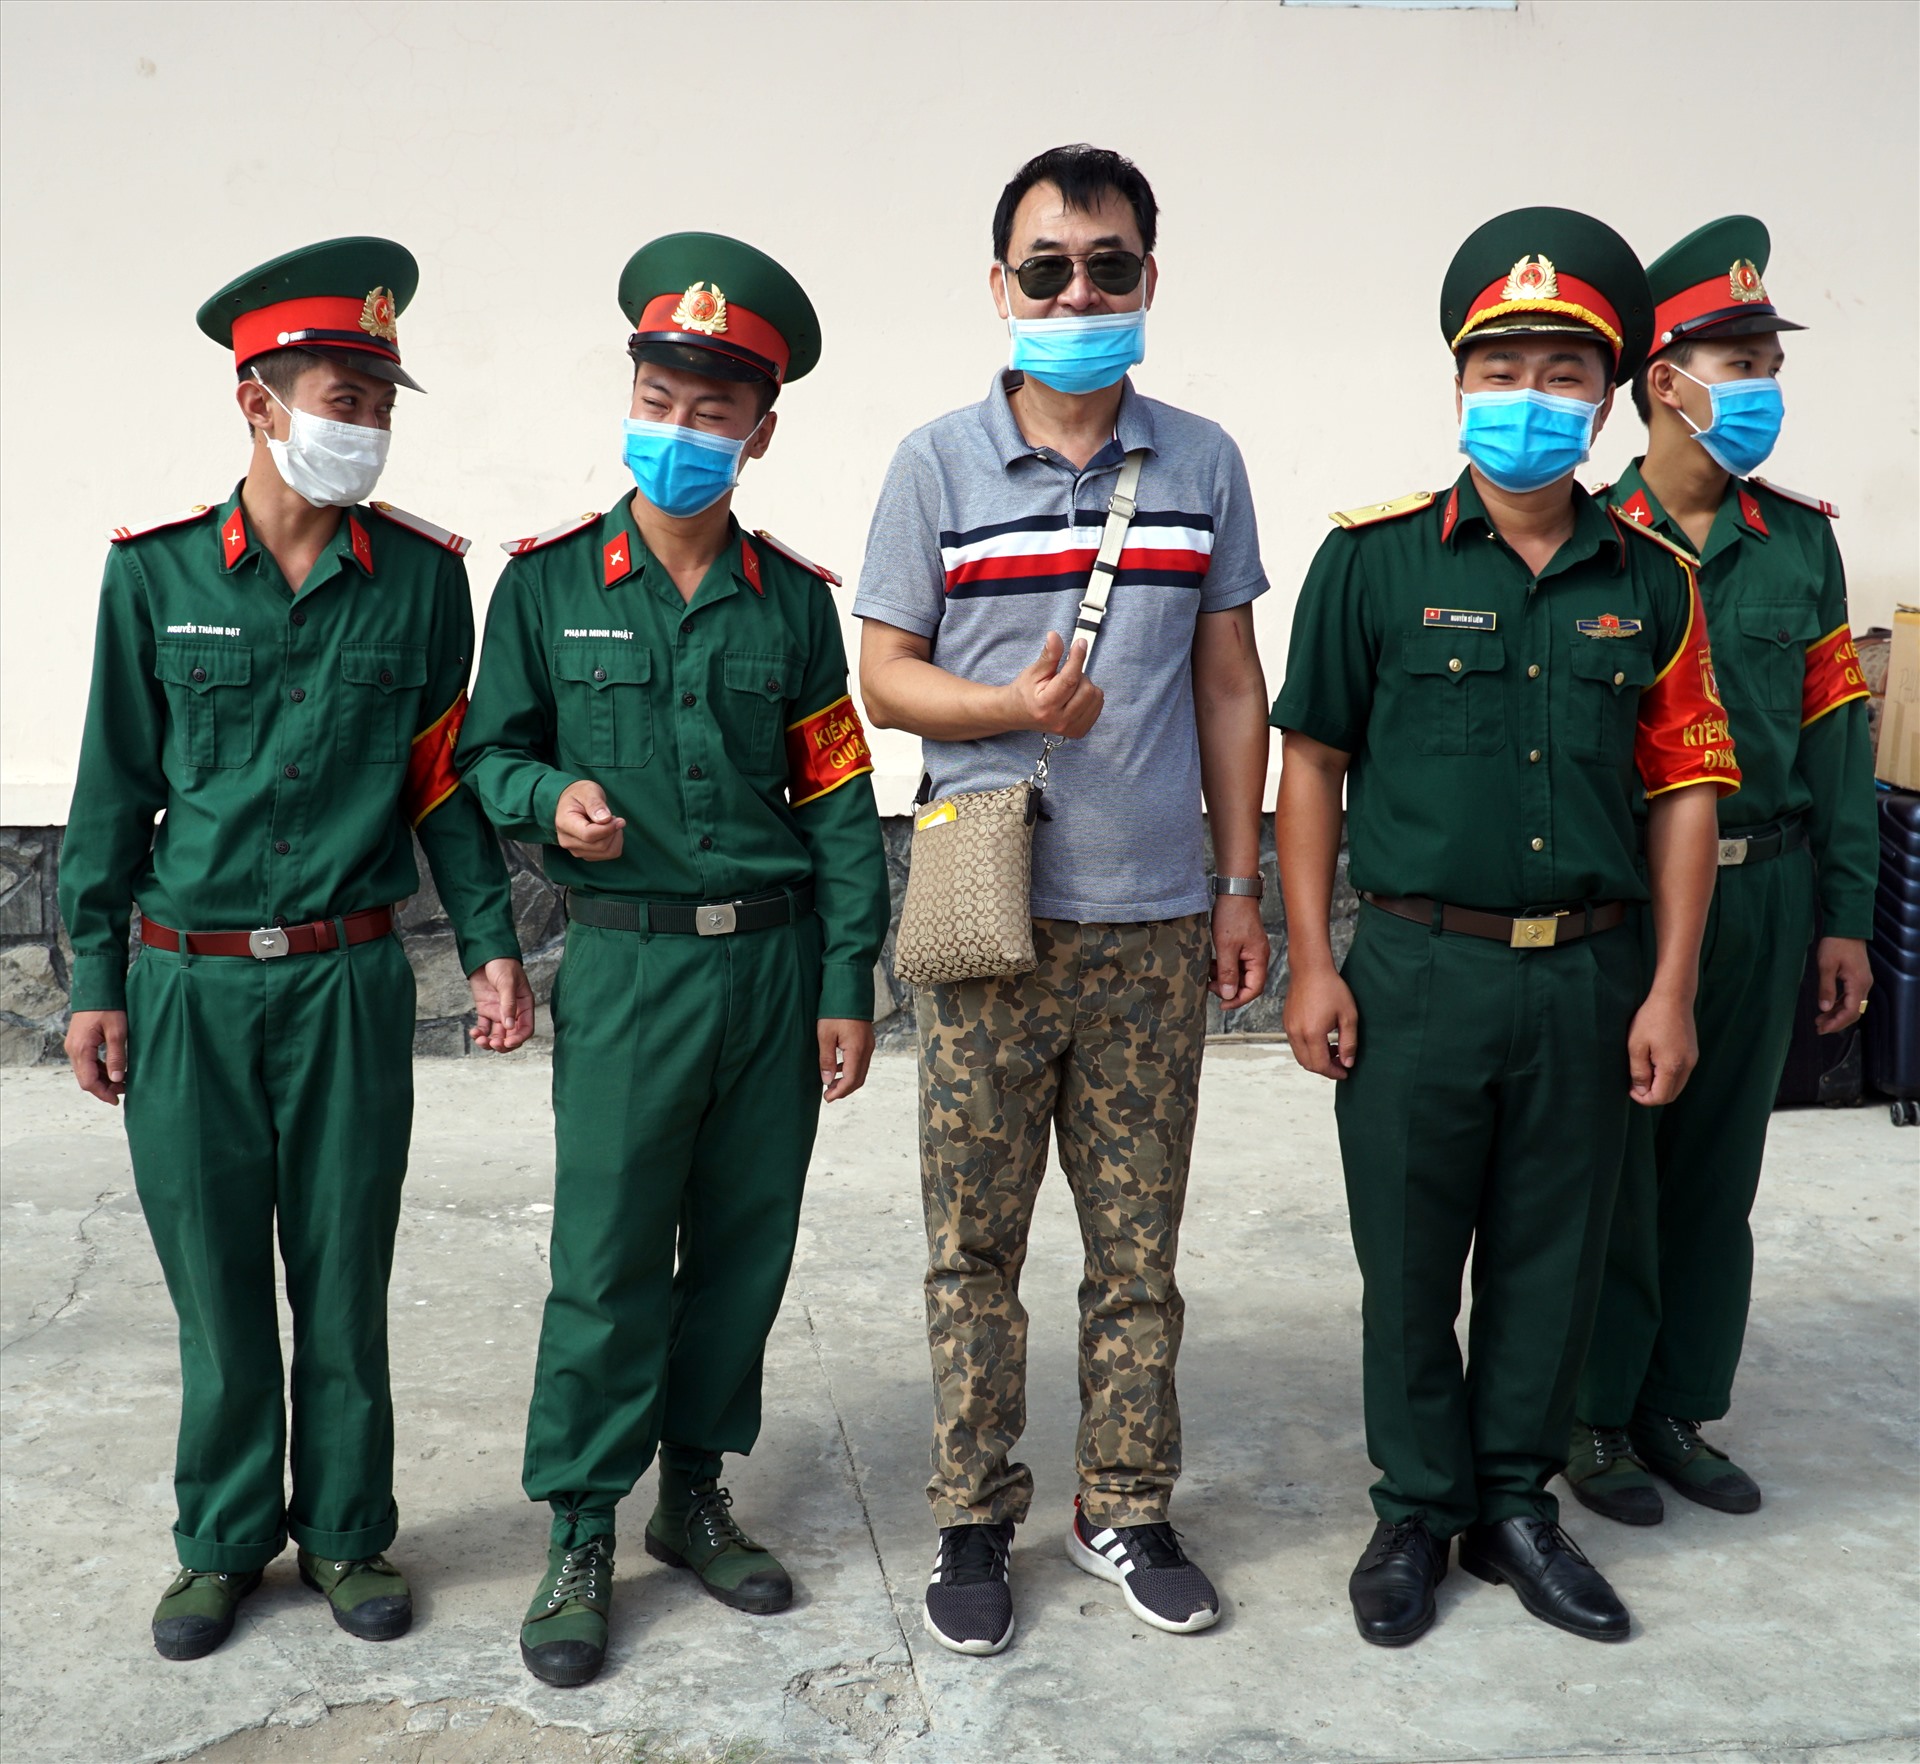 Anh Sung người Hàn Quốc xin chụp hình lưu niệm với các cán bộ chiến sĩ trước khi ra về (ảnh Nguyễn Phong)